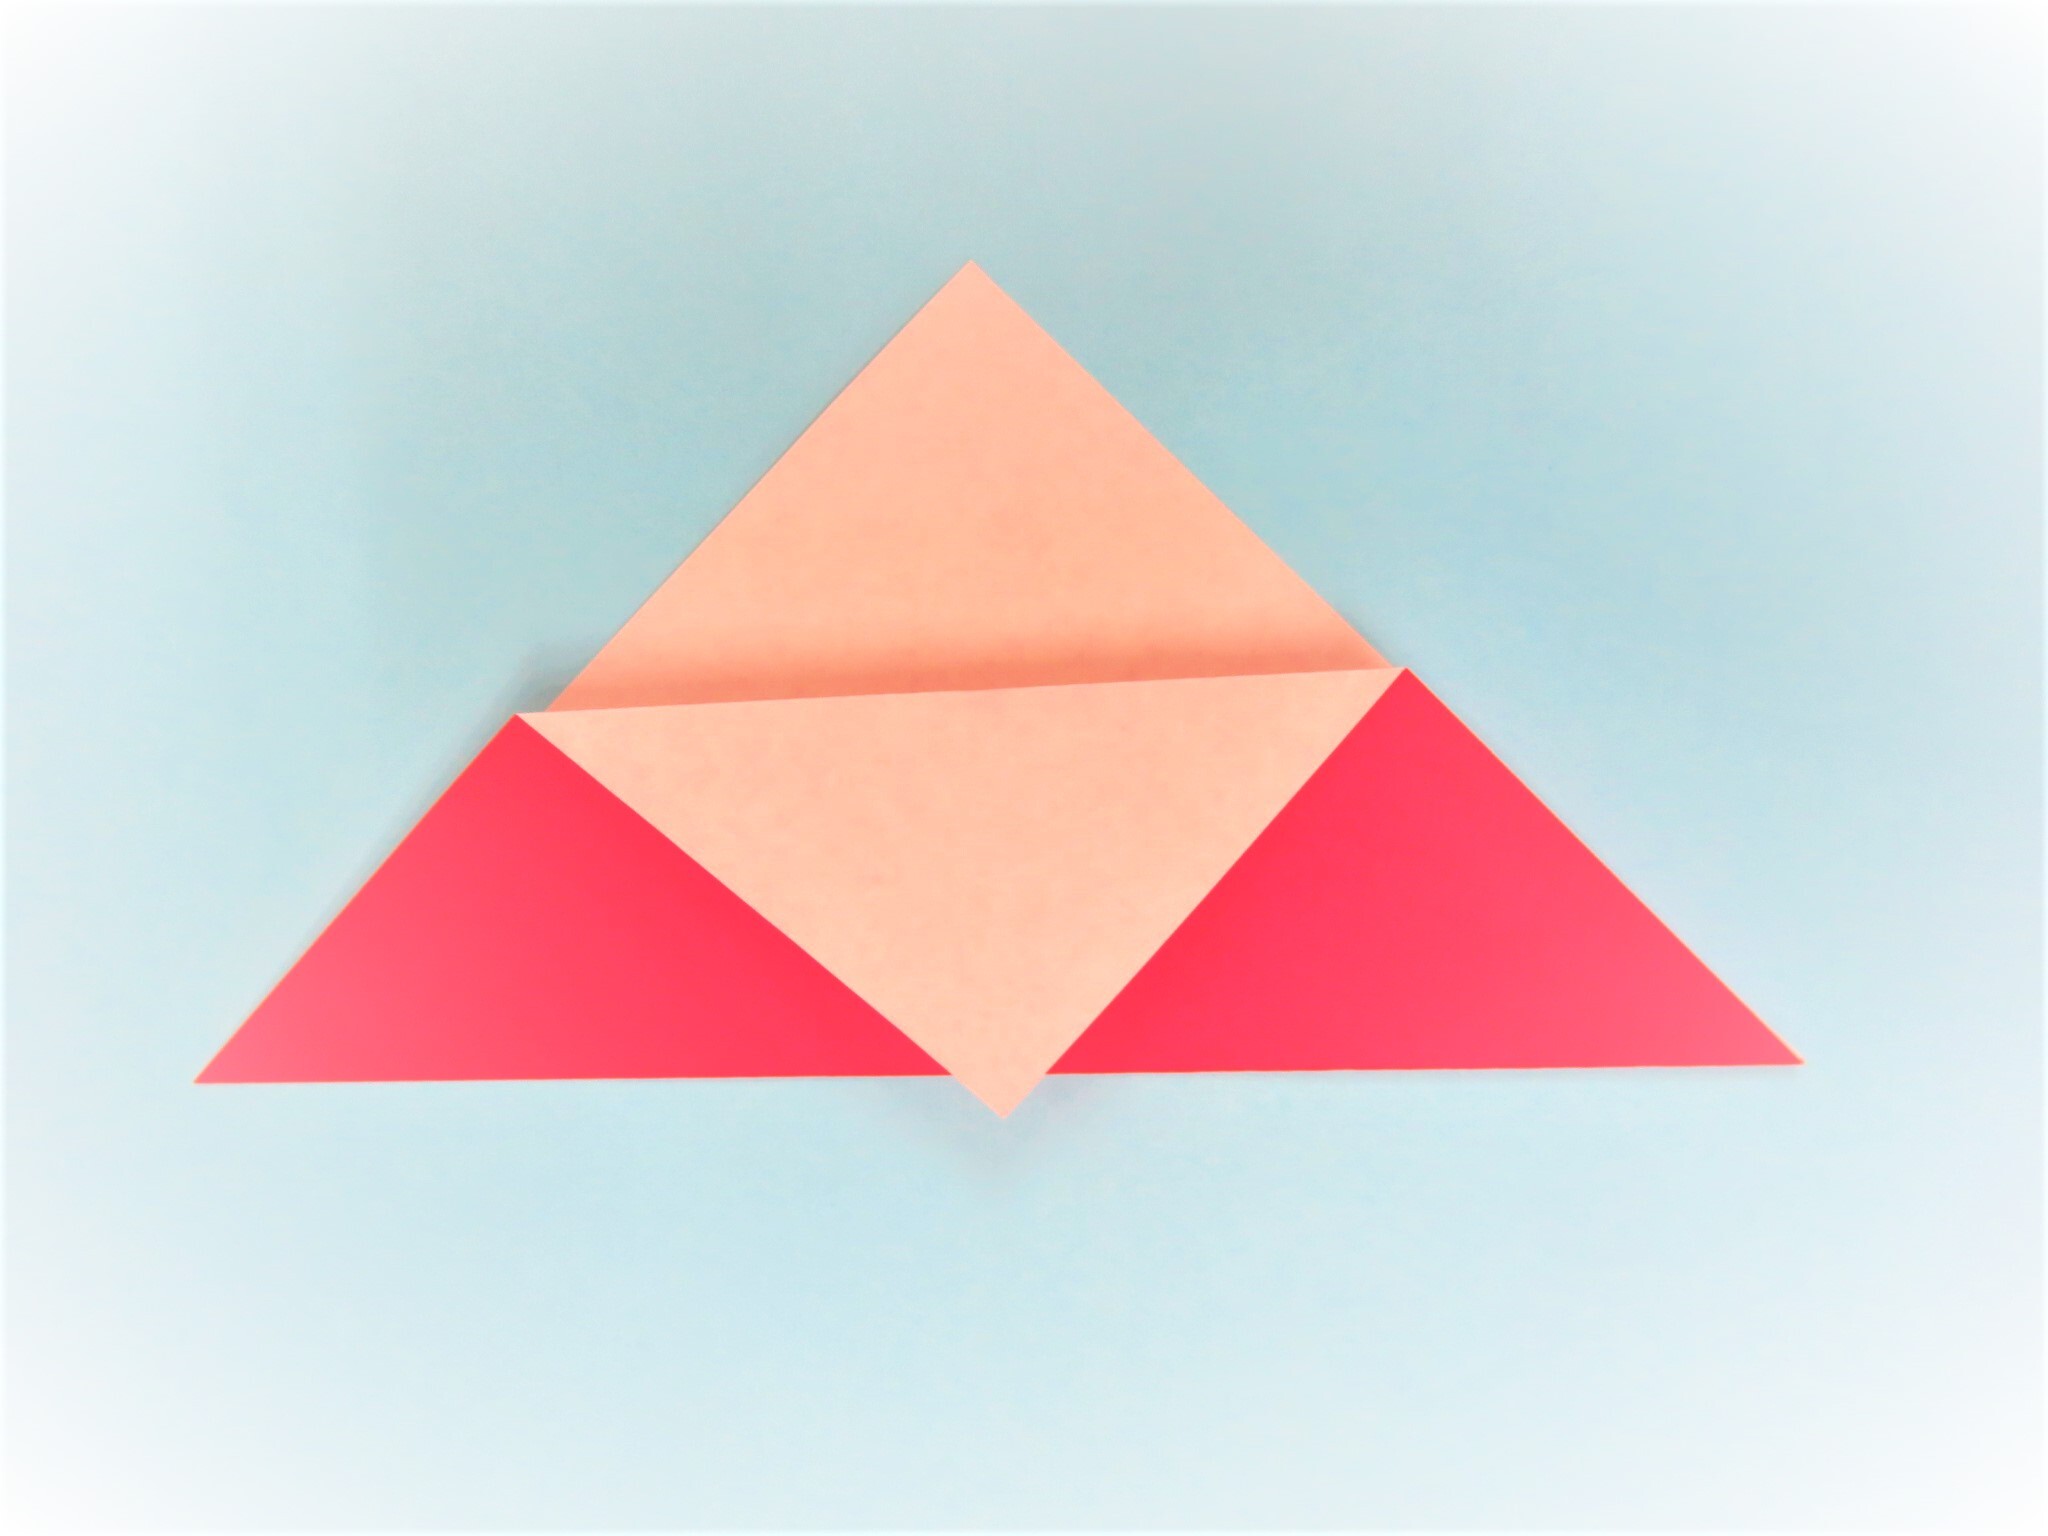 折り紙2